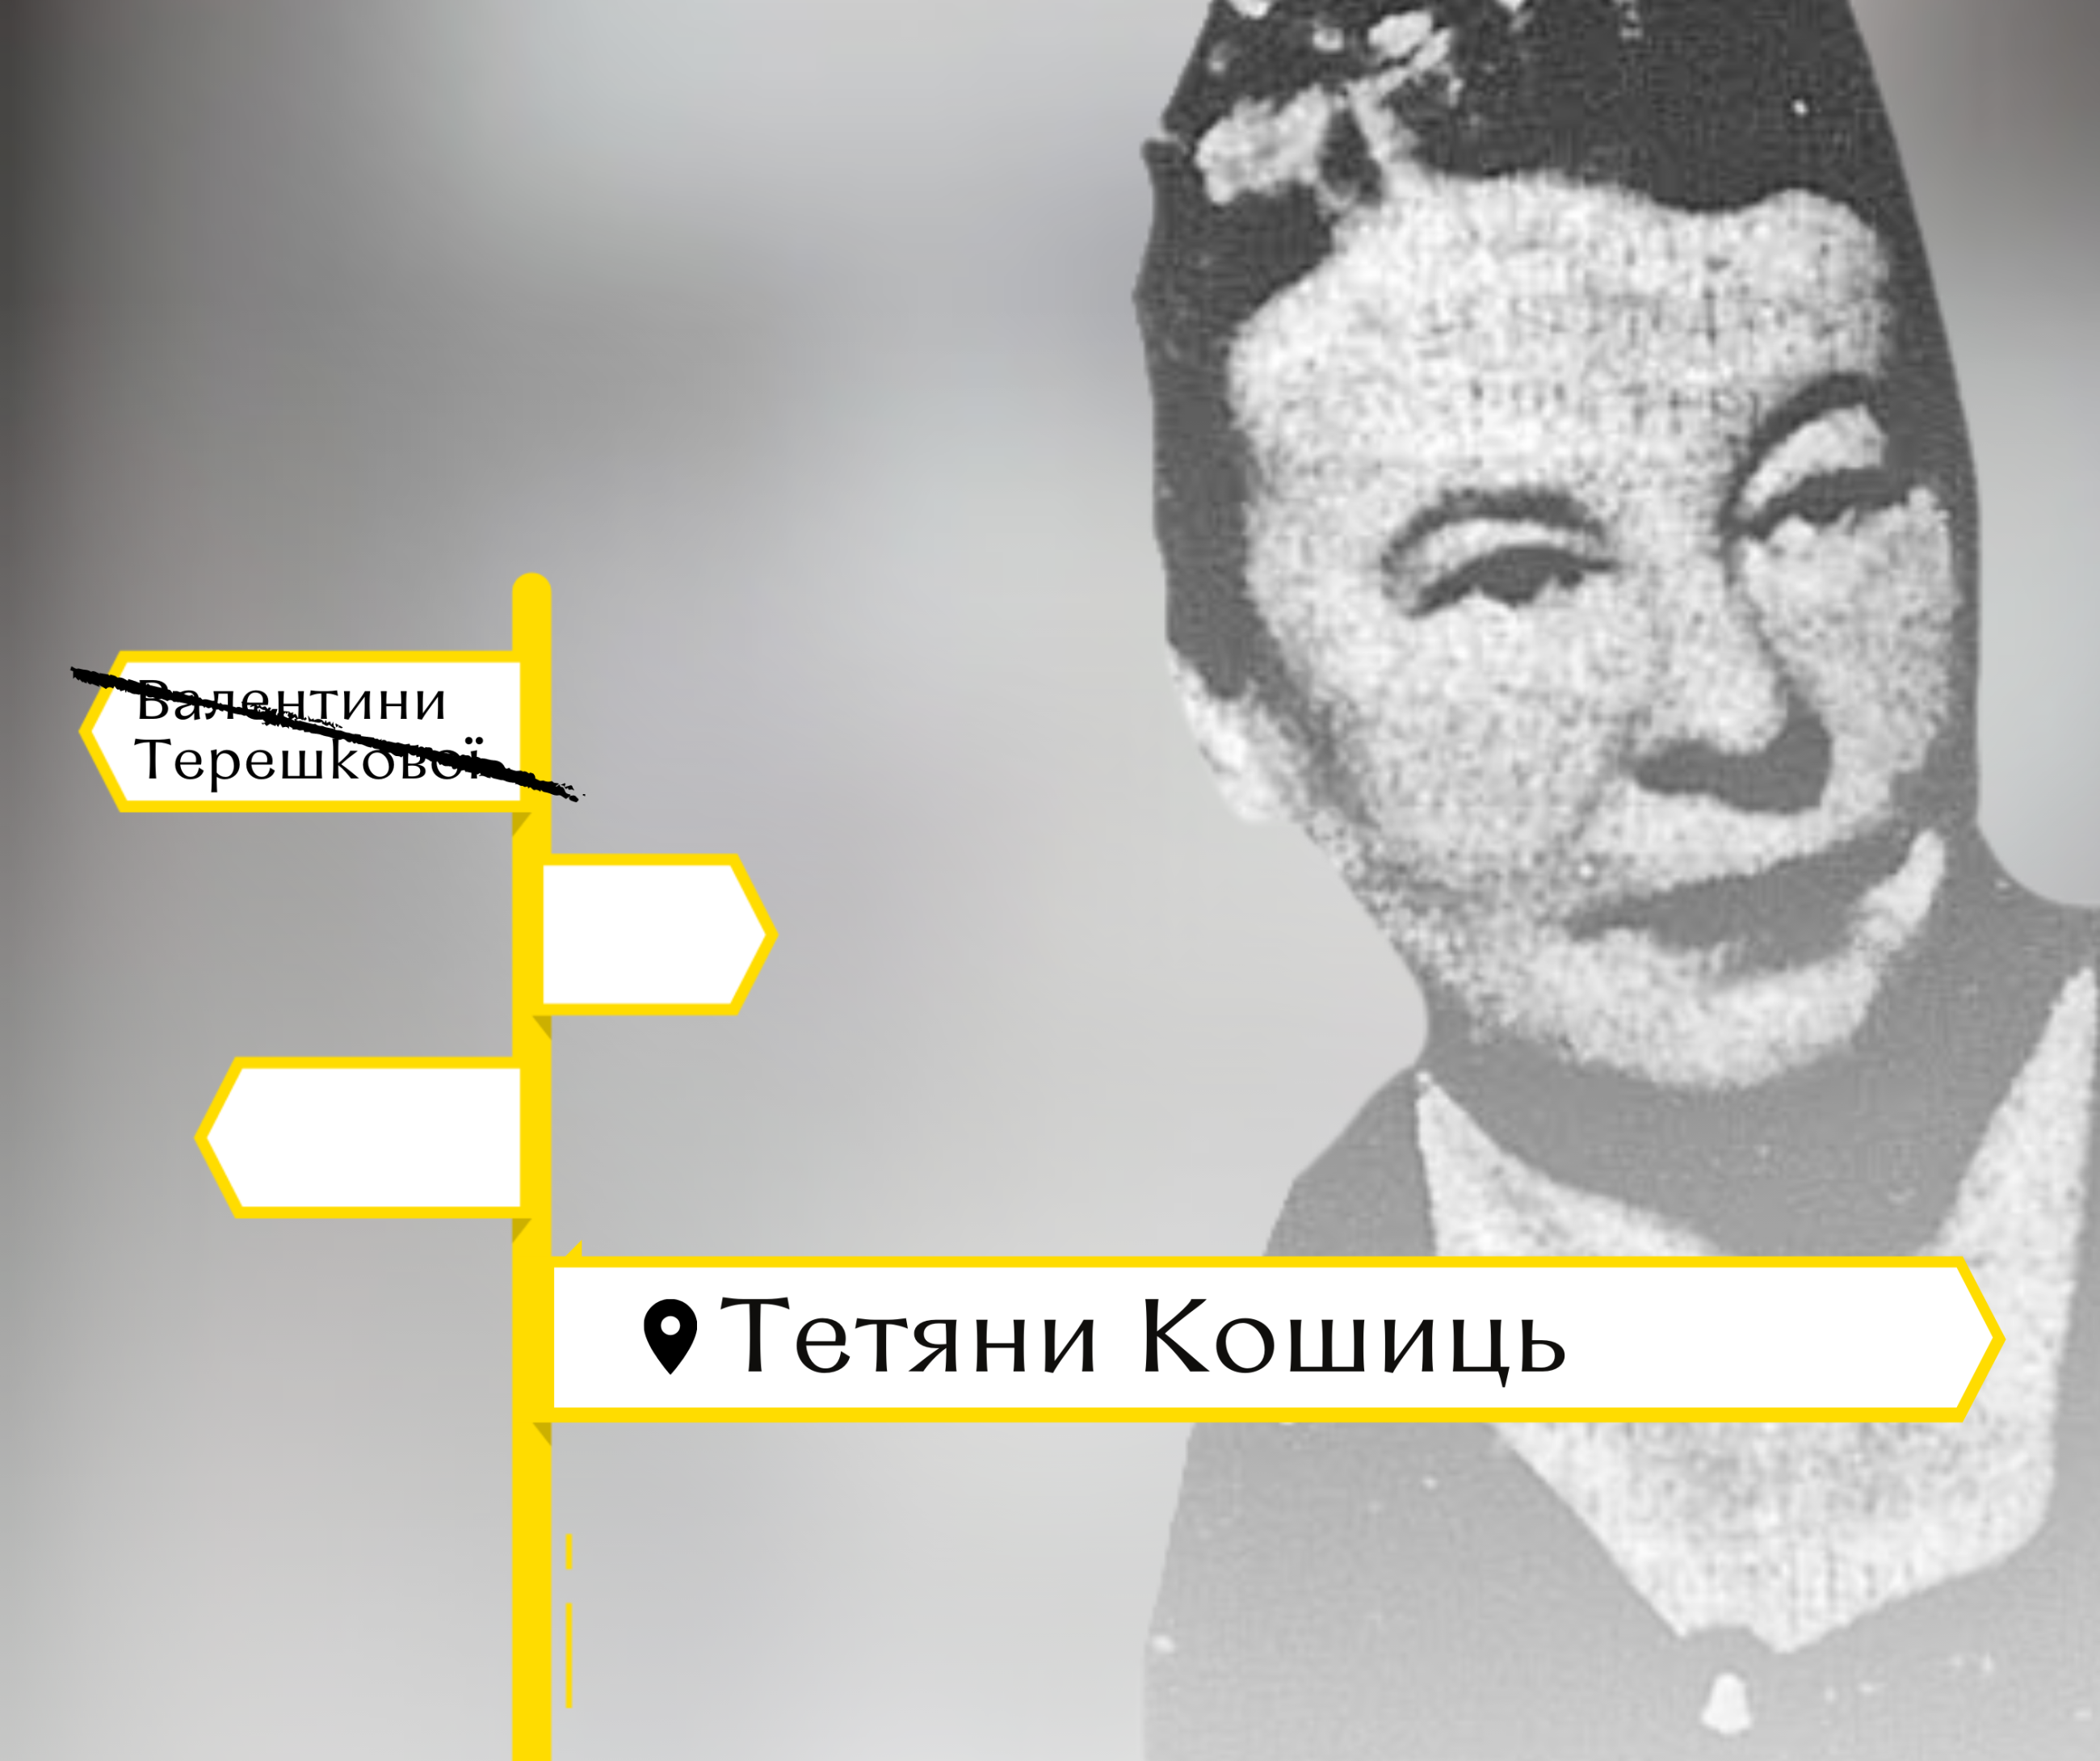 Одну з вулиць Вінниці назвали на честь вінничанки Тетяни Кошиць